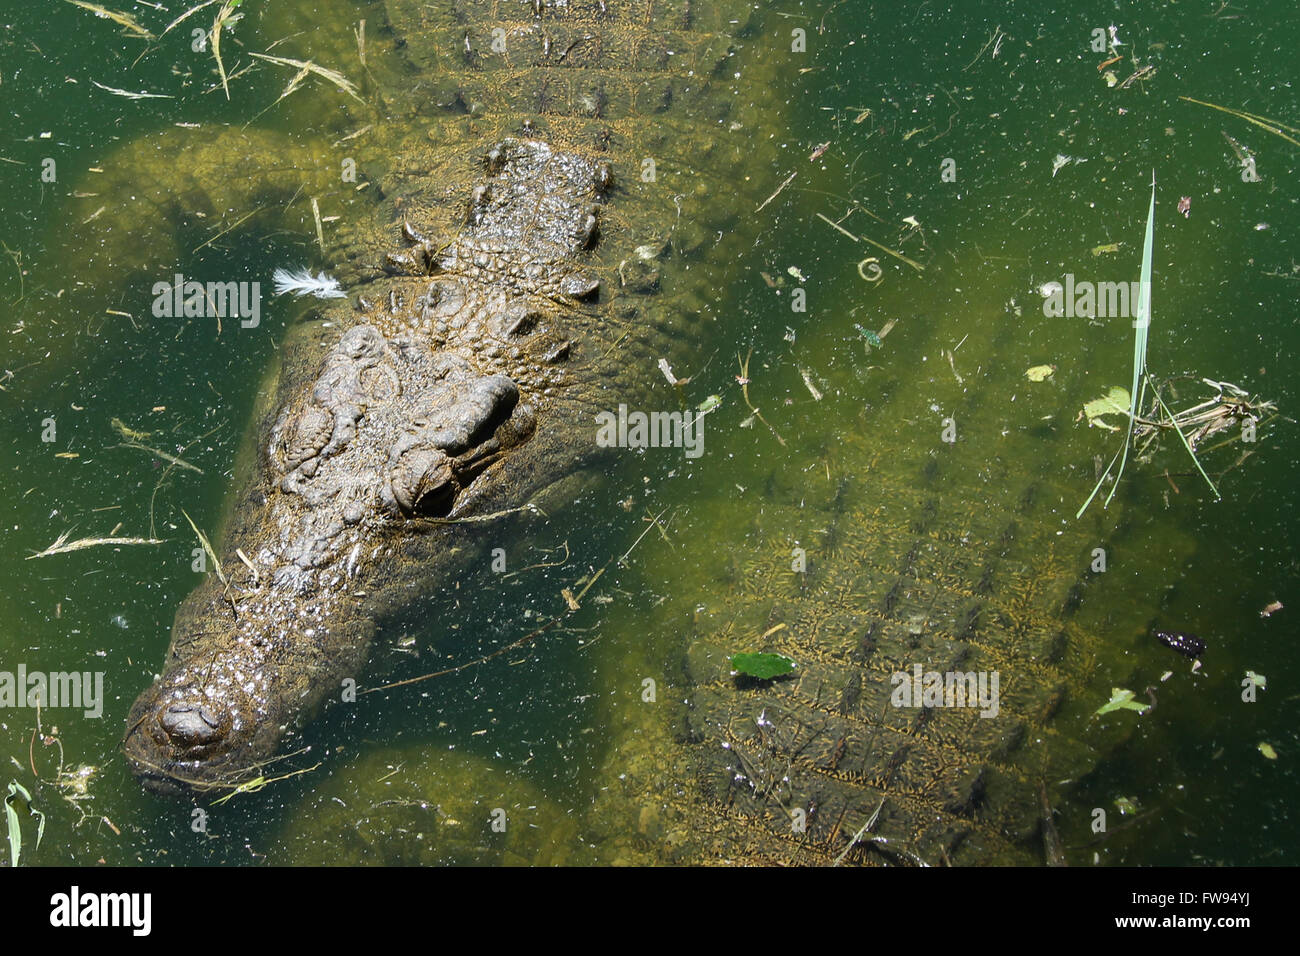 Ein Krokodil Bäder im Wasser abkühlen lassen. Stockfoto